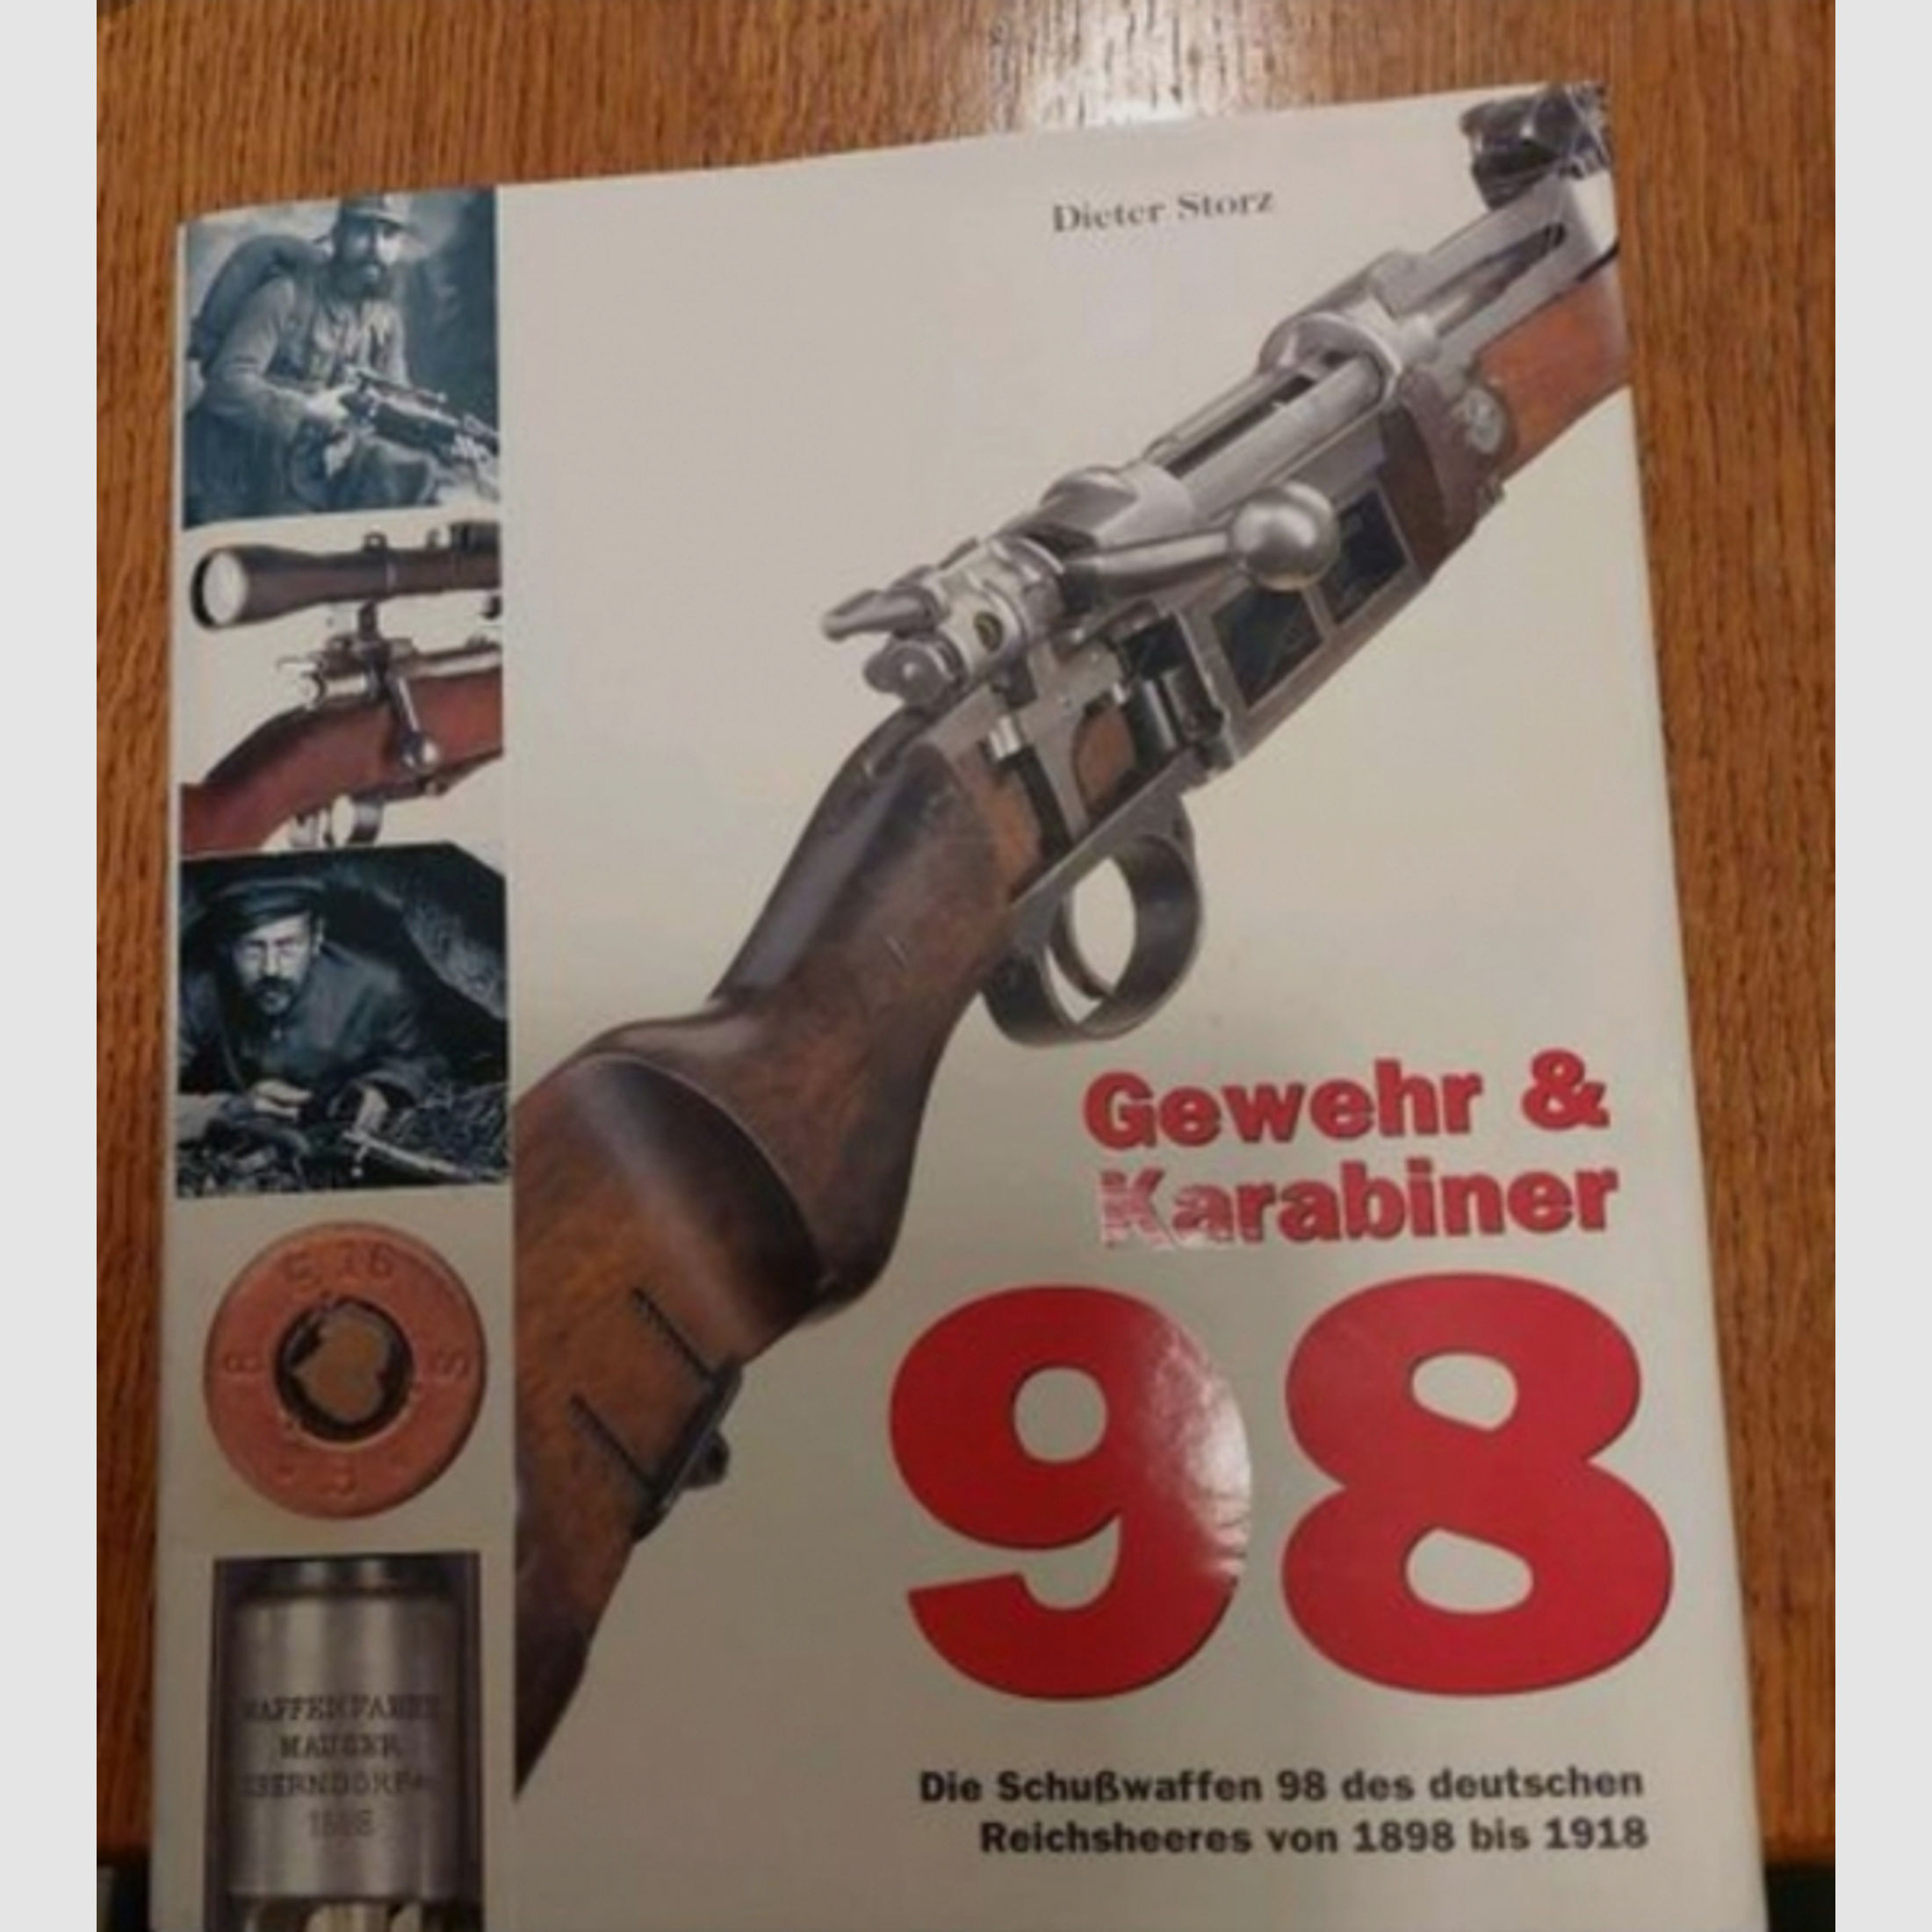 Gewehr & Karabiner 98